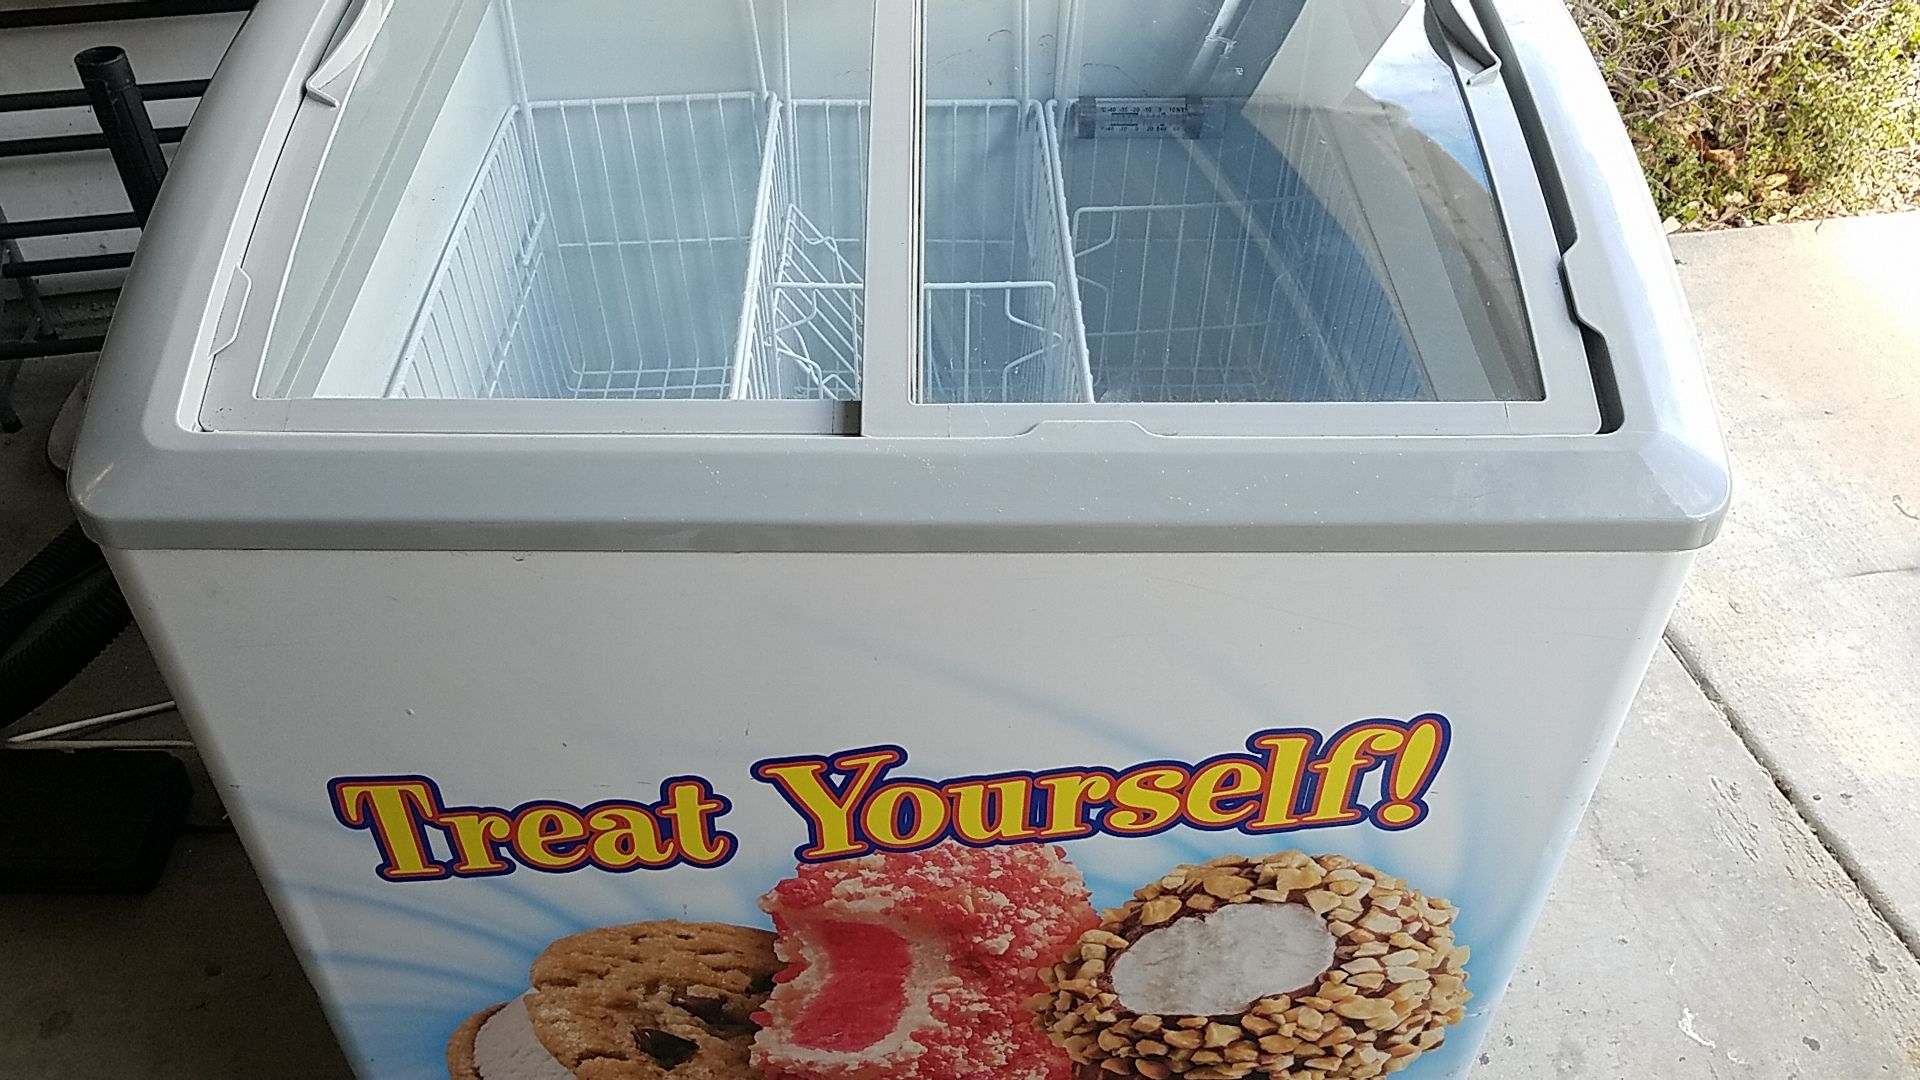 Commercial Ice Cream freezer